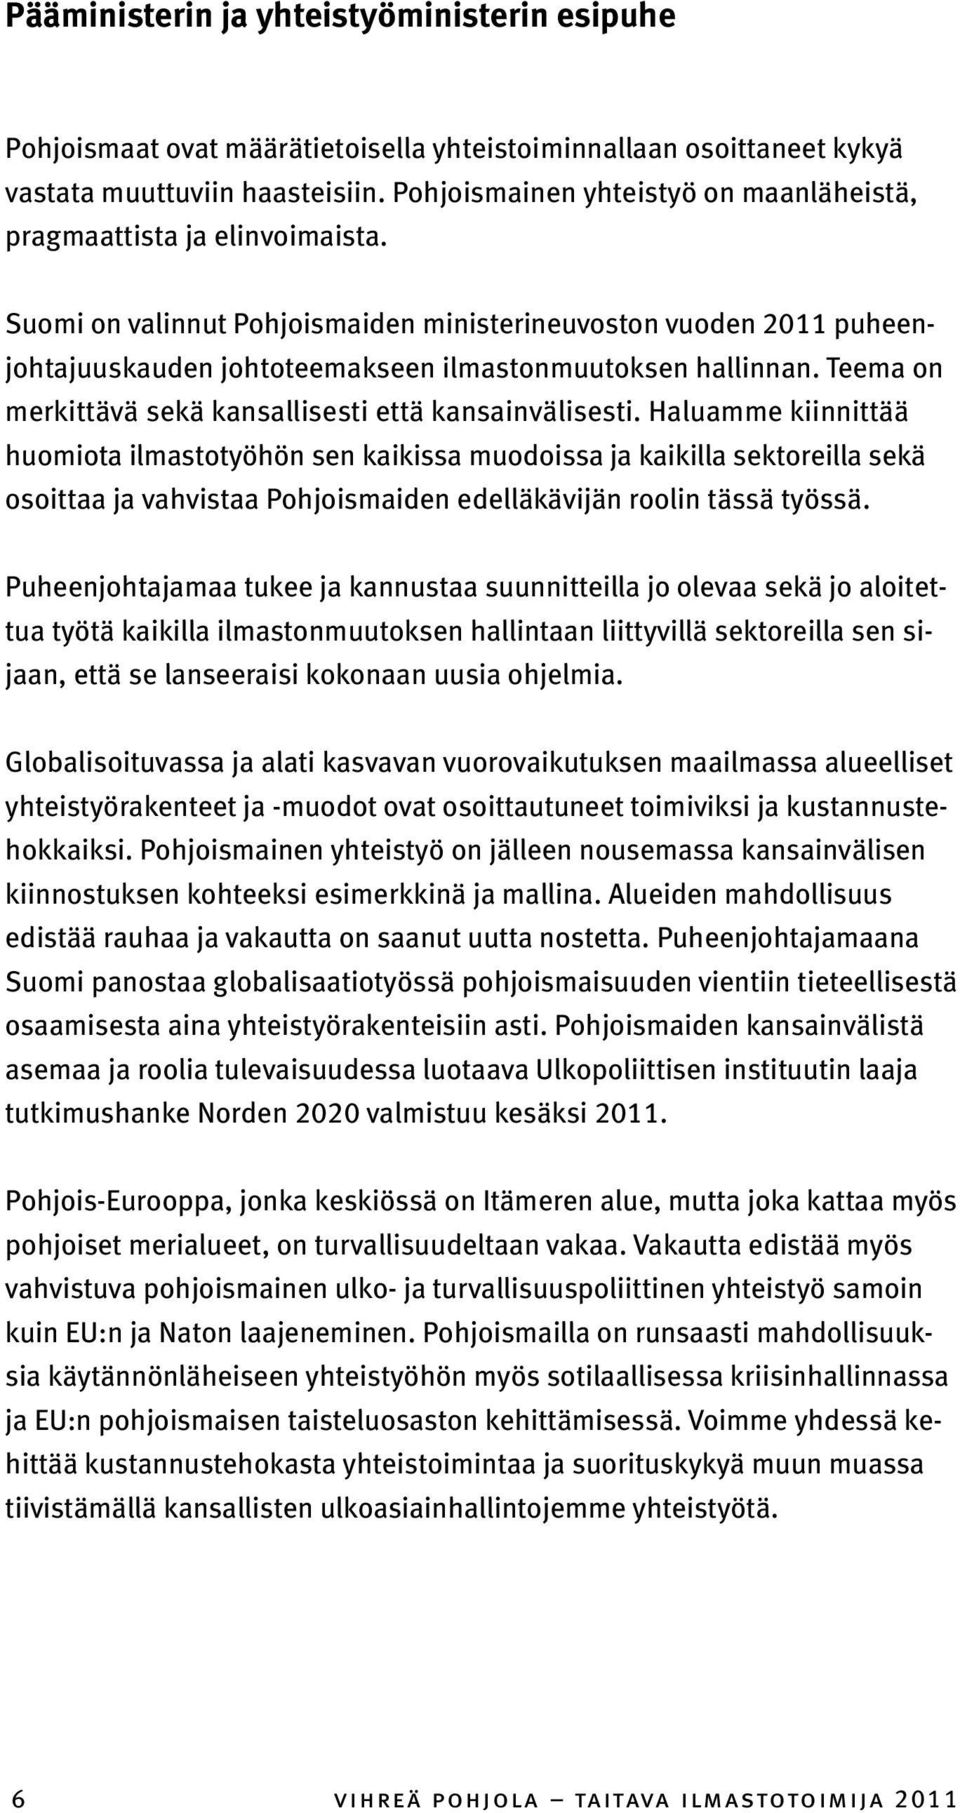 Suomi on valinnut Pohjoismaiden ministerineuvoston vuoden 2011 puheenjohtajuuskauden johtoteemakseen ilmastonmuutoksen hallinnan. Teema on merkittävä sekä kansallisesti että kansainvälisesti.